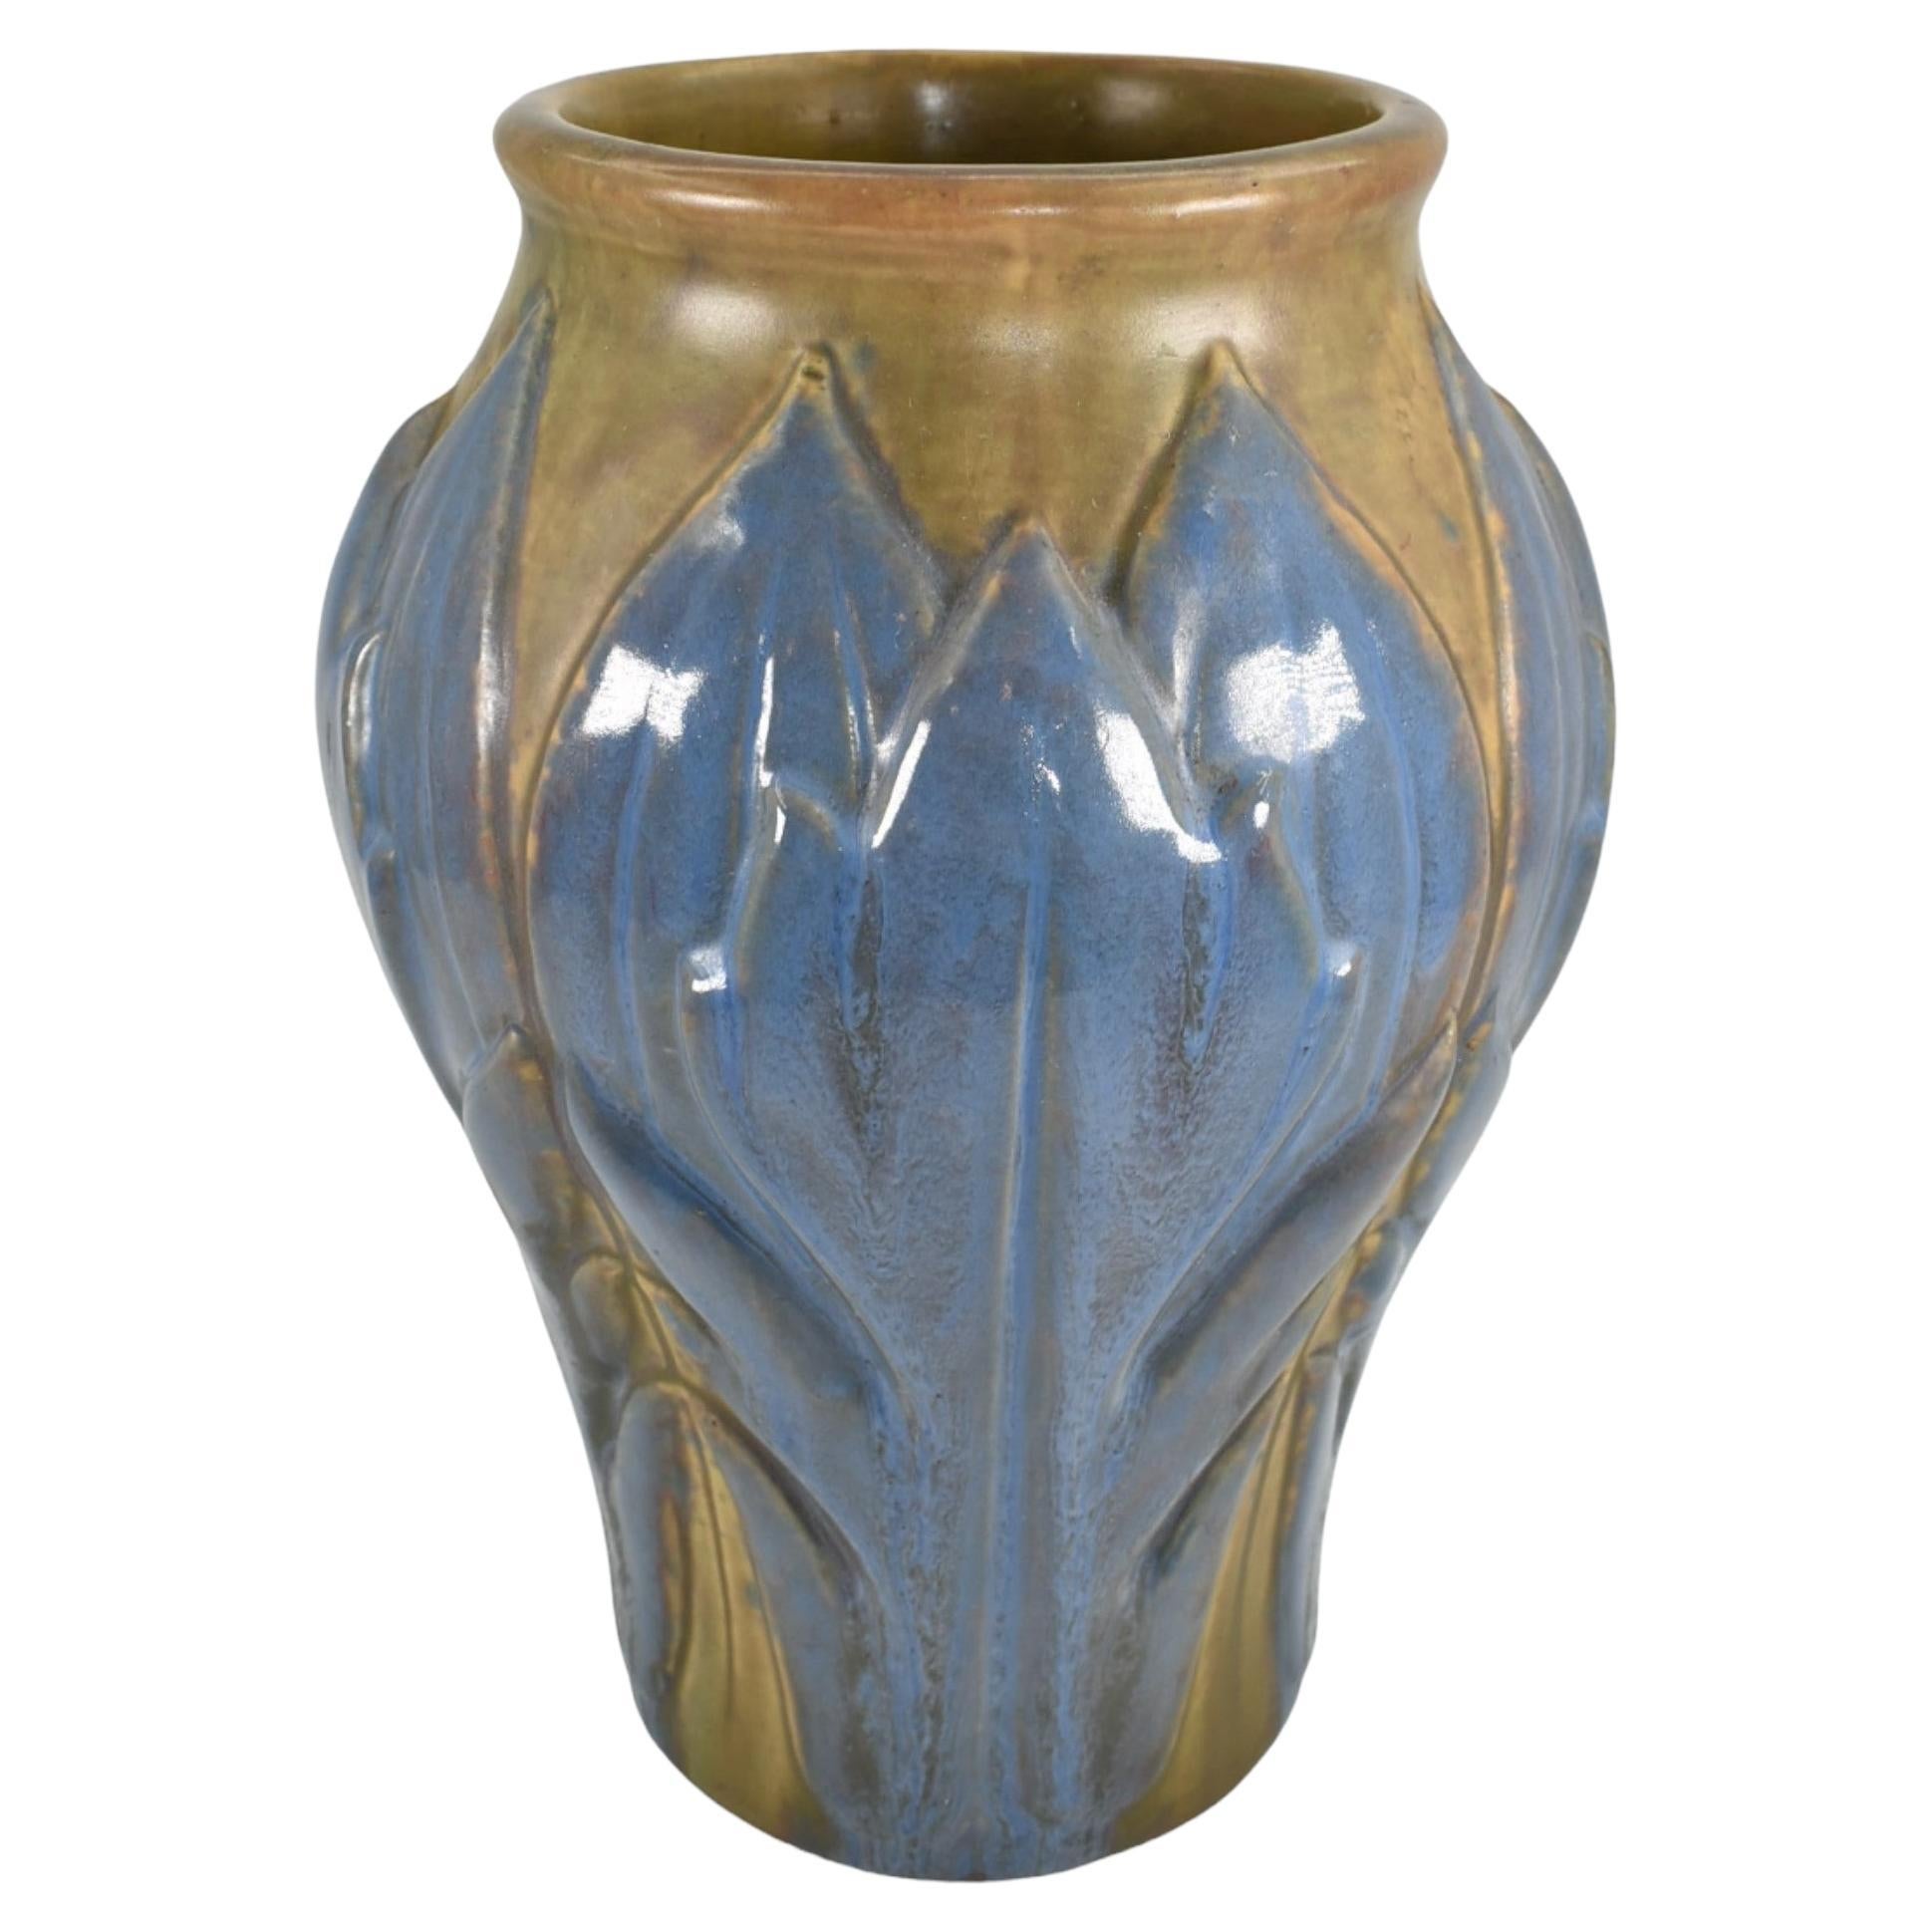 Roseville Frühe Velmoss Trial-Glasur 1916 Vintage-Keramik-Vase 135-10, Vintage